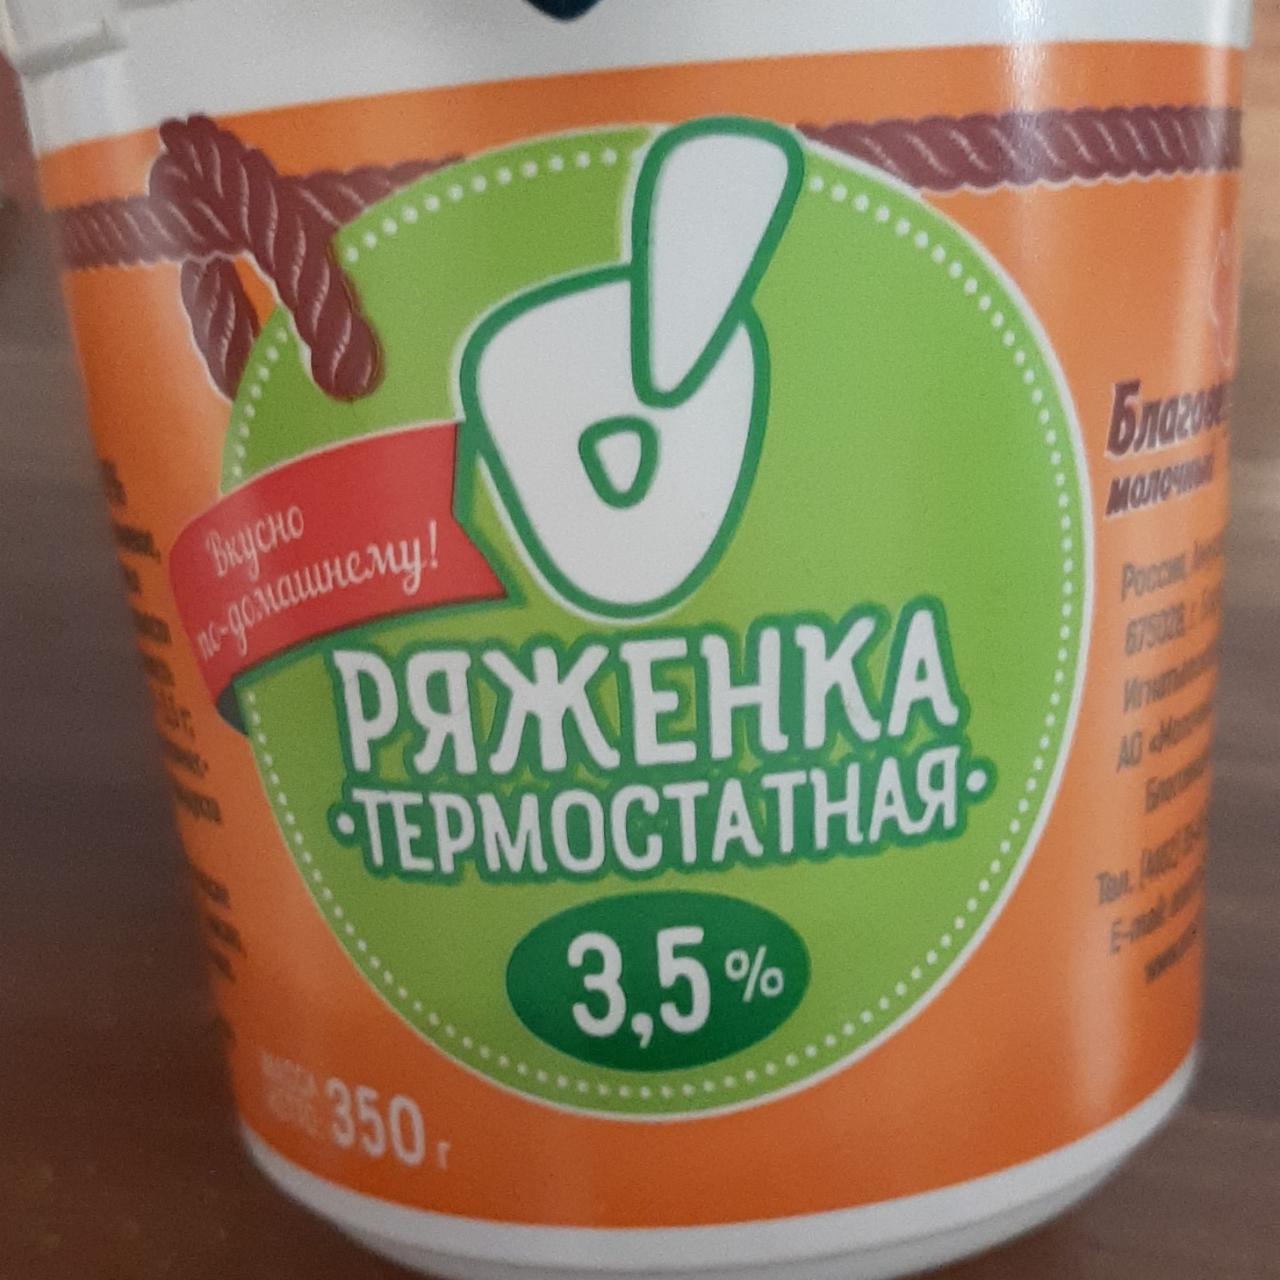 Фото - Ряженка термостатная 3.5% О! Азбука молока